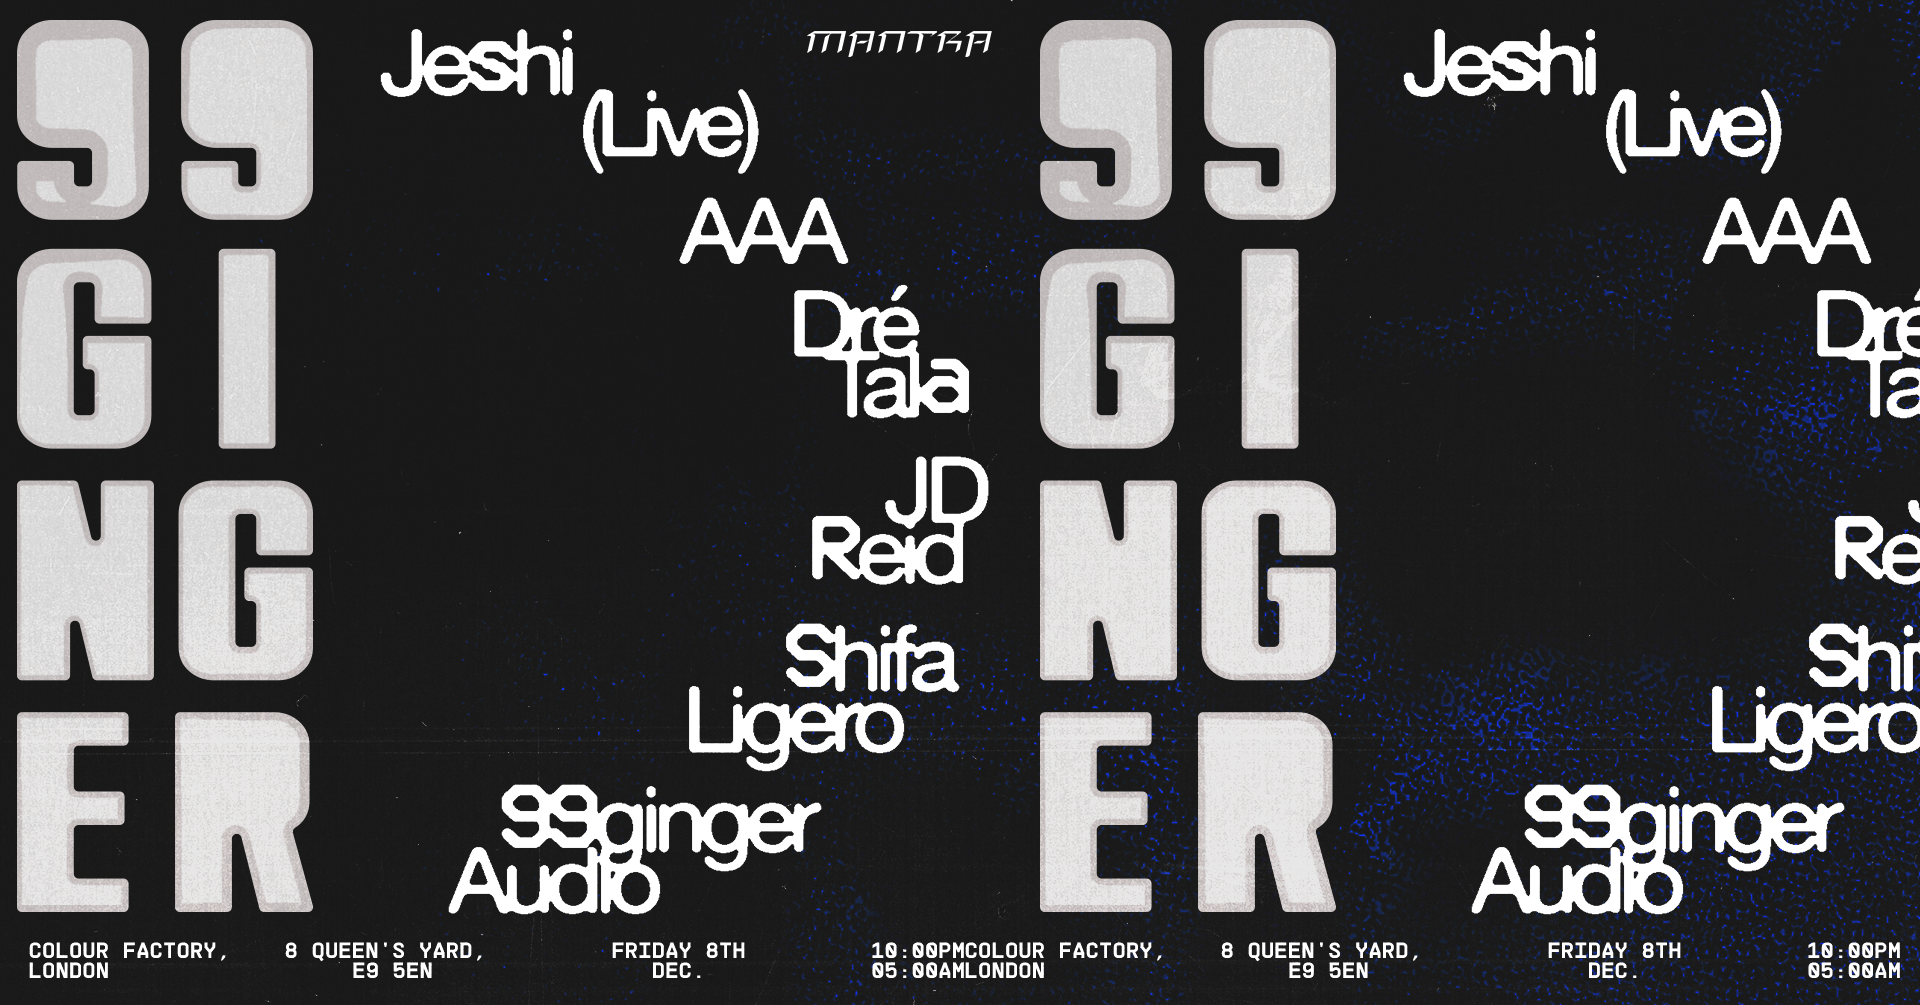 99GINGER: Jeshi, Dre Tala, JD Reid, Shifa Ligero, AAA  - Página frontal